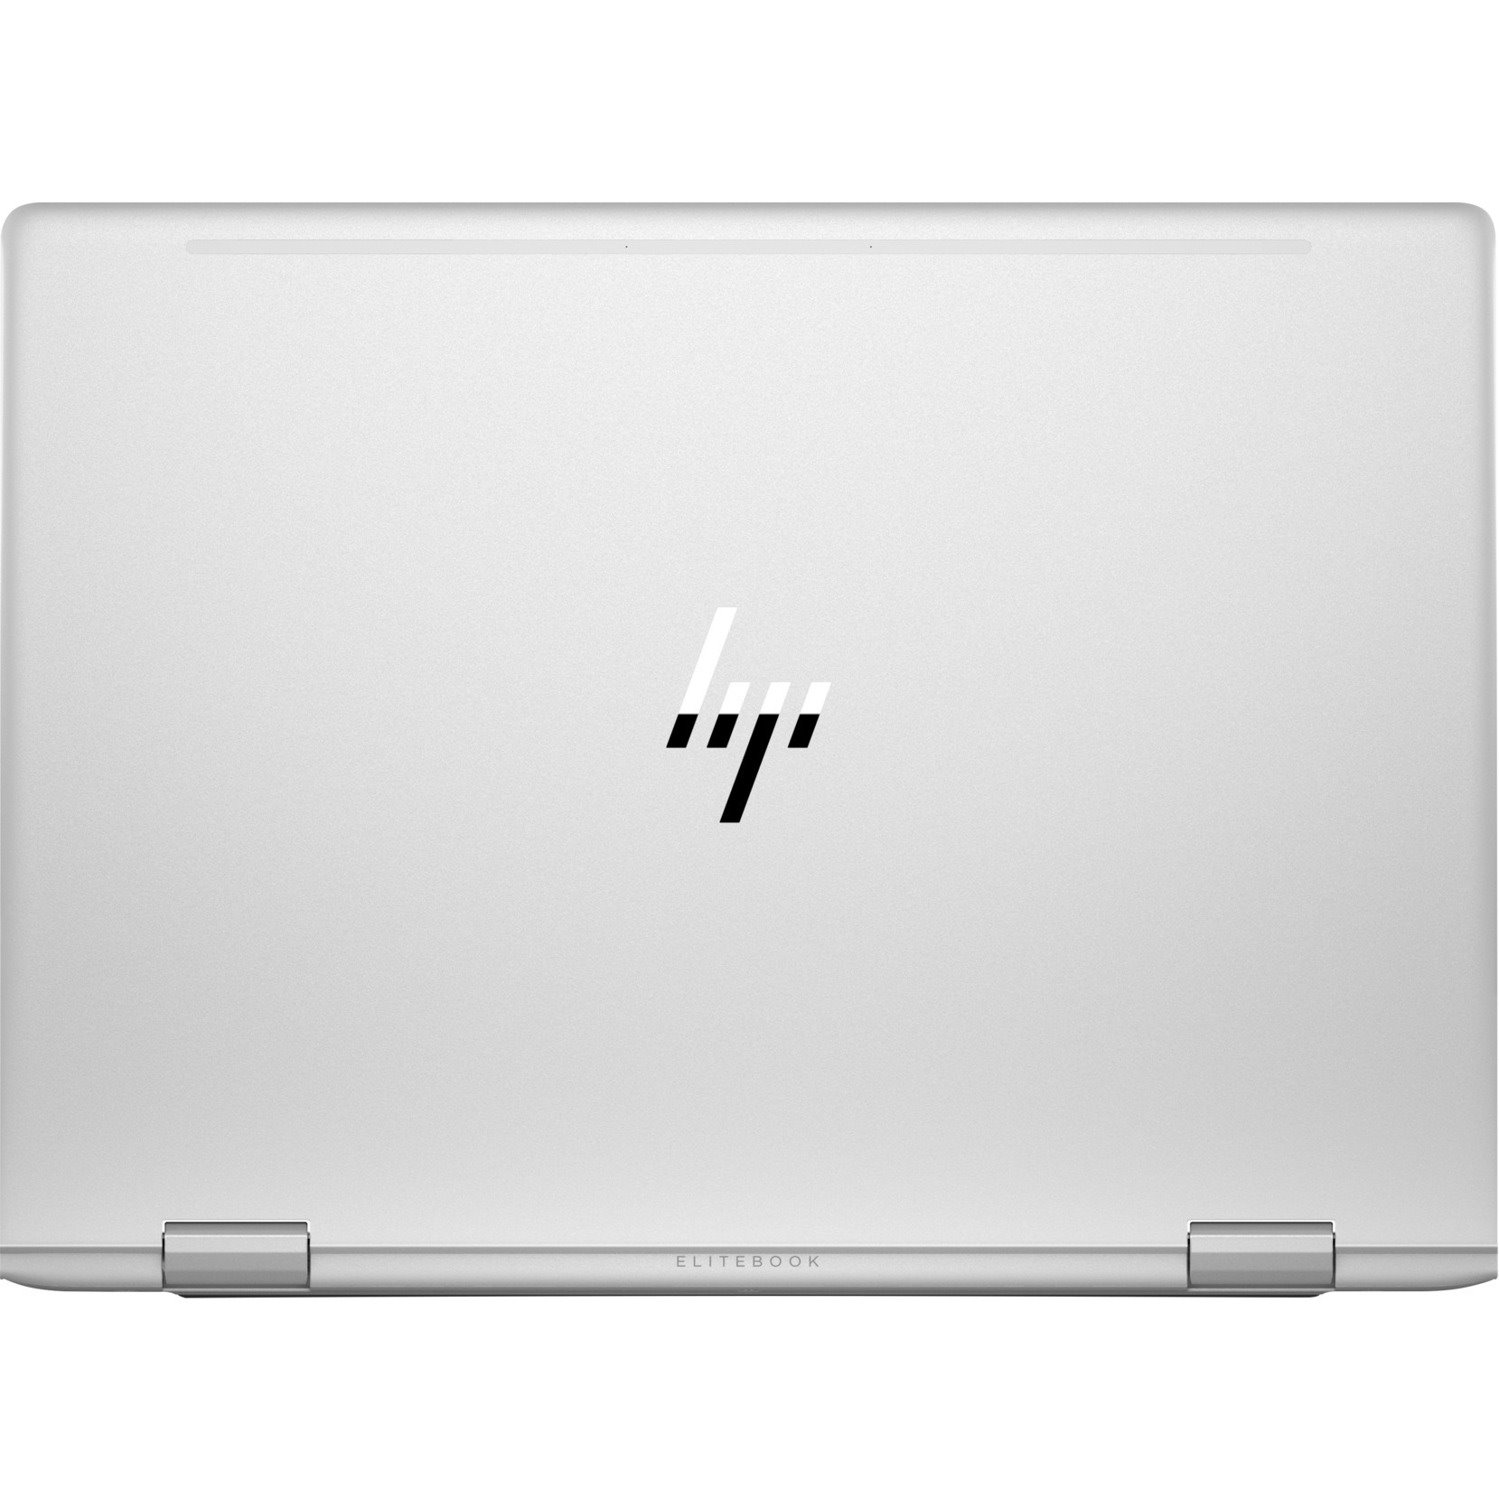 HP EliteBook x360 830 G6 13.3" Touchscreen Convertible 2 in 1 Notebook - 1920 x 1080 - Intel Core i7 8th Gen i7-8565U Quad-core (4 Core) 1.80 GHz - 8 GB Total RAM - 256 GB SSD